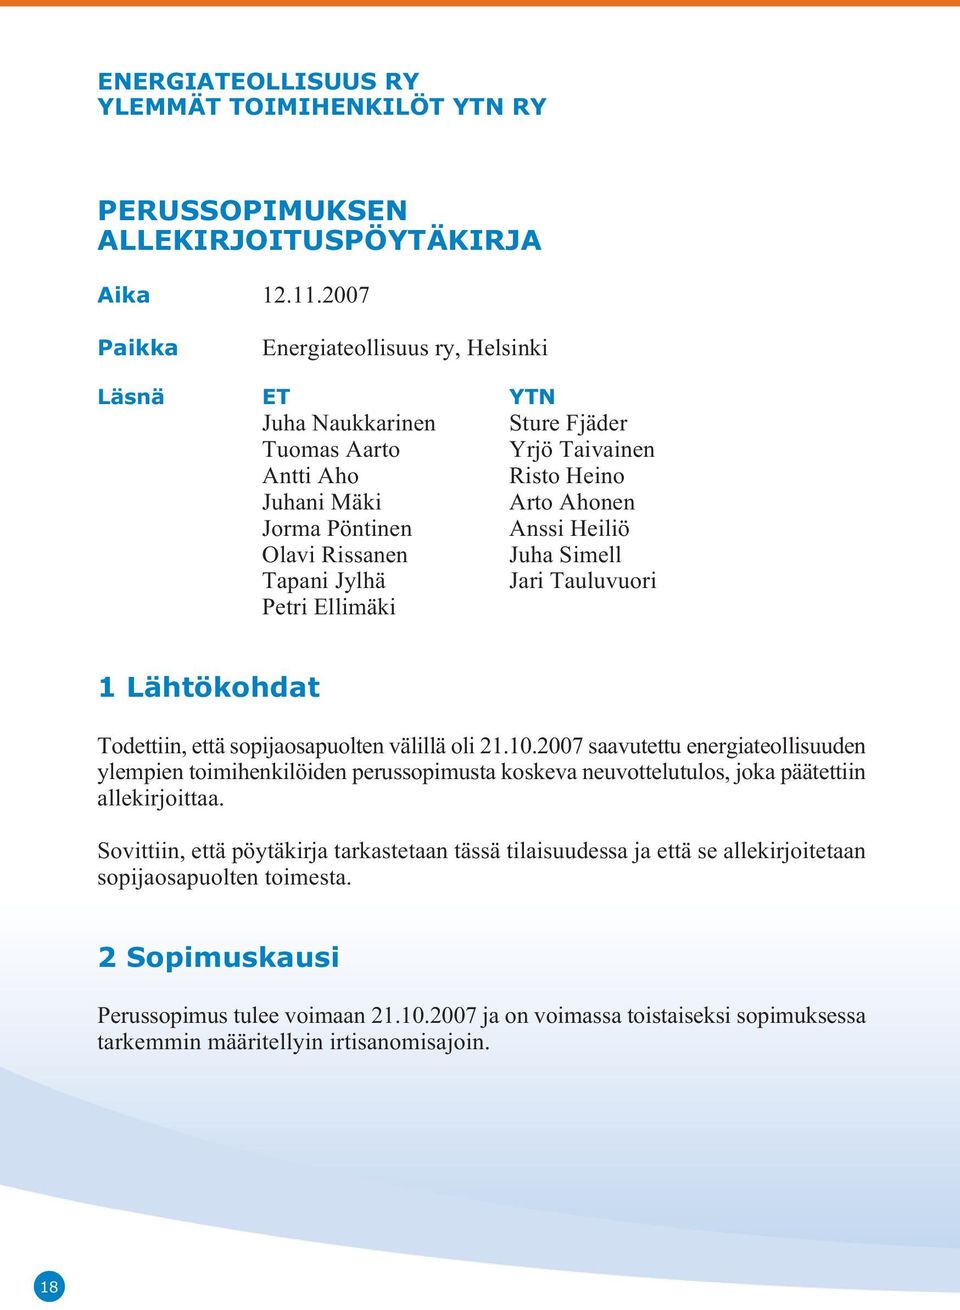 Rissanen Juha Simell Tapani Jylhä Jari Tauluvuori Petri Ellimäki 1 Lähtökohdat Todettiin, että sopijaosapuolten välillä oli 21.10.